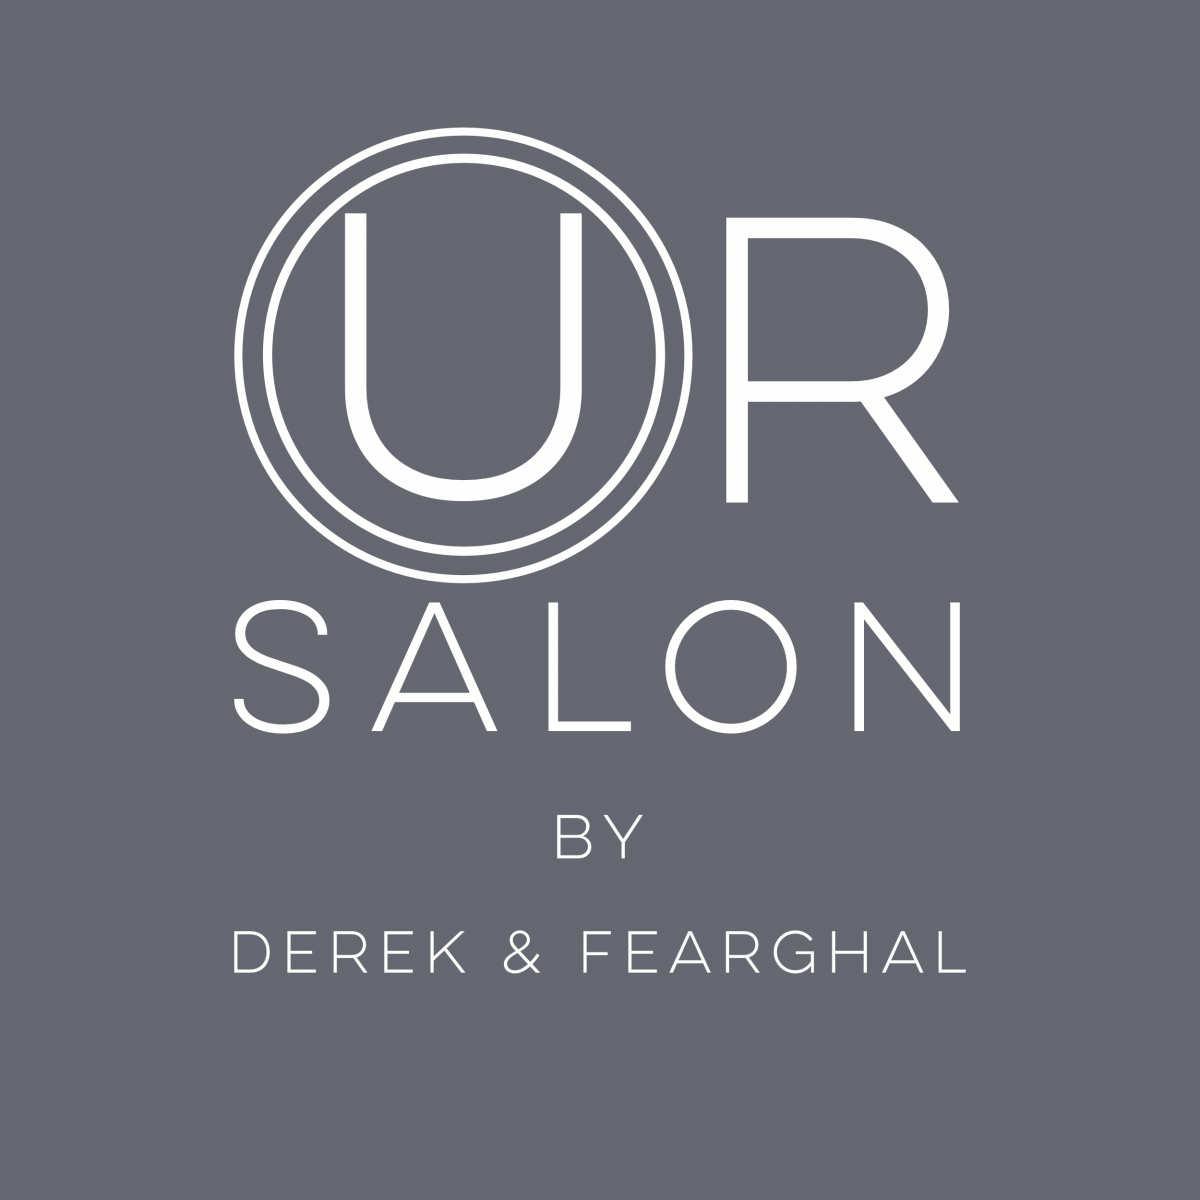 Our Salon by Derek & Fearghal